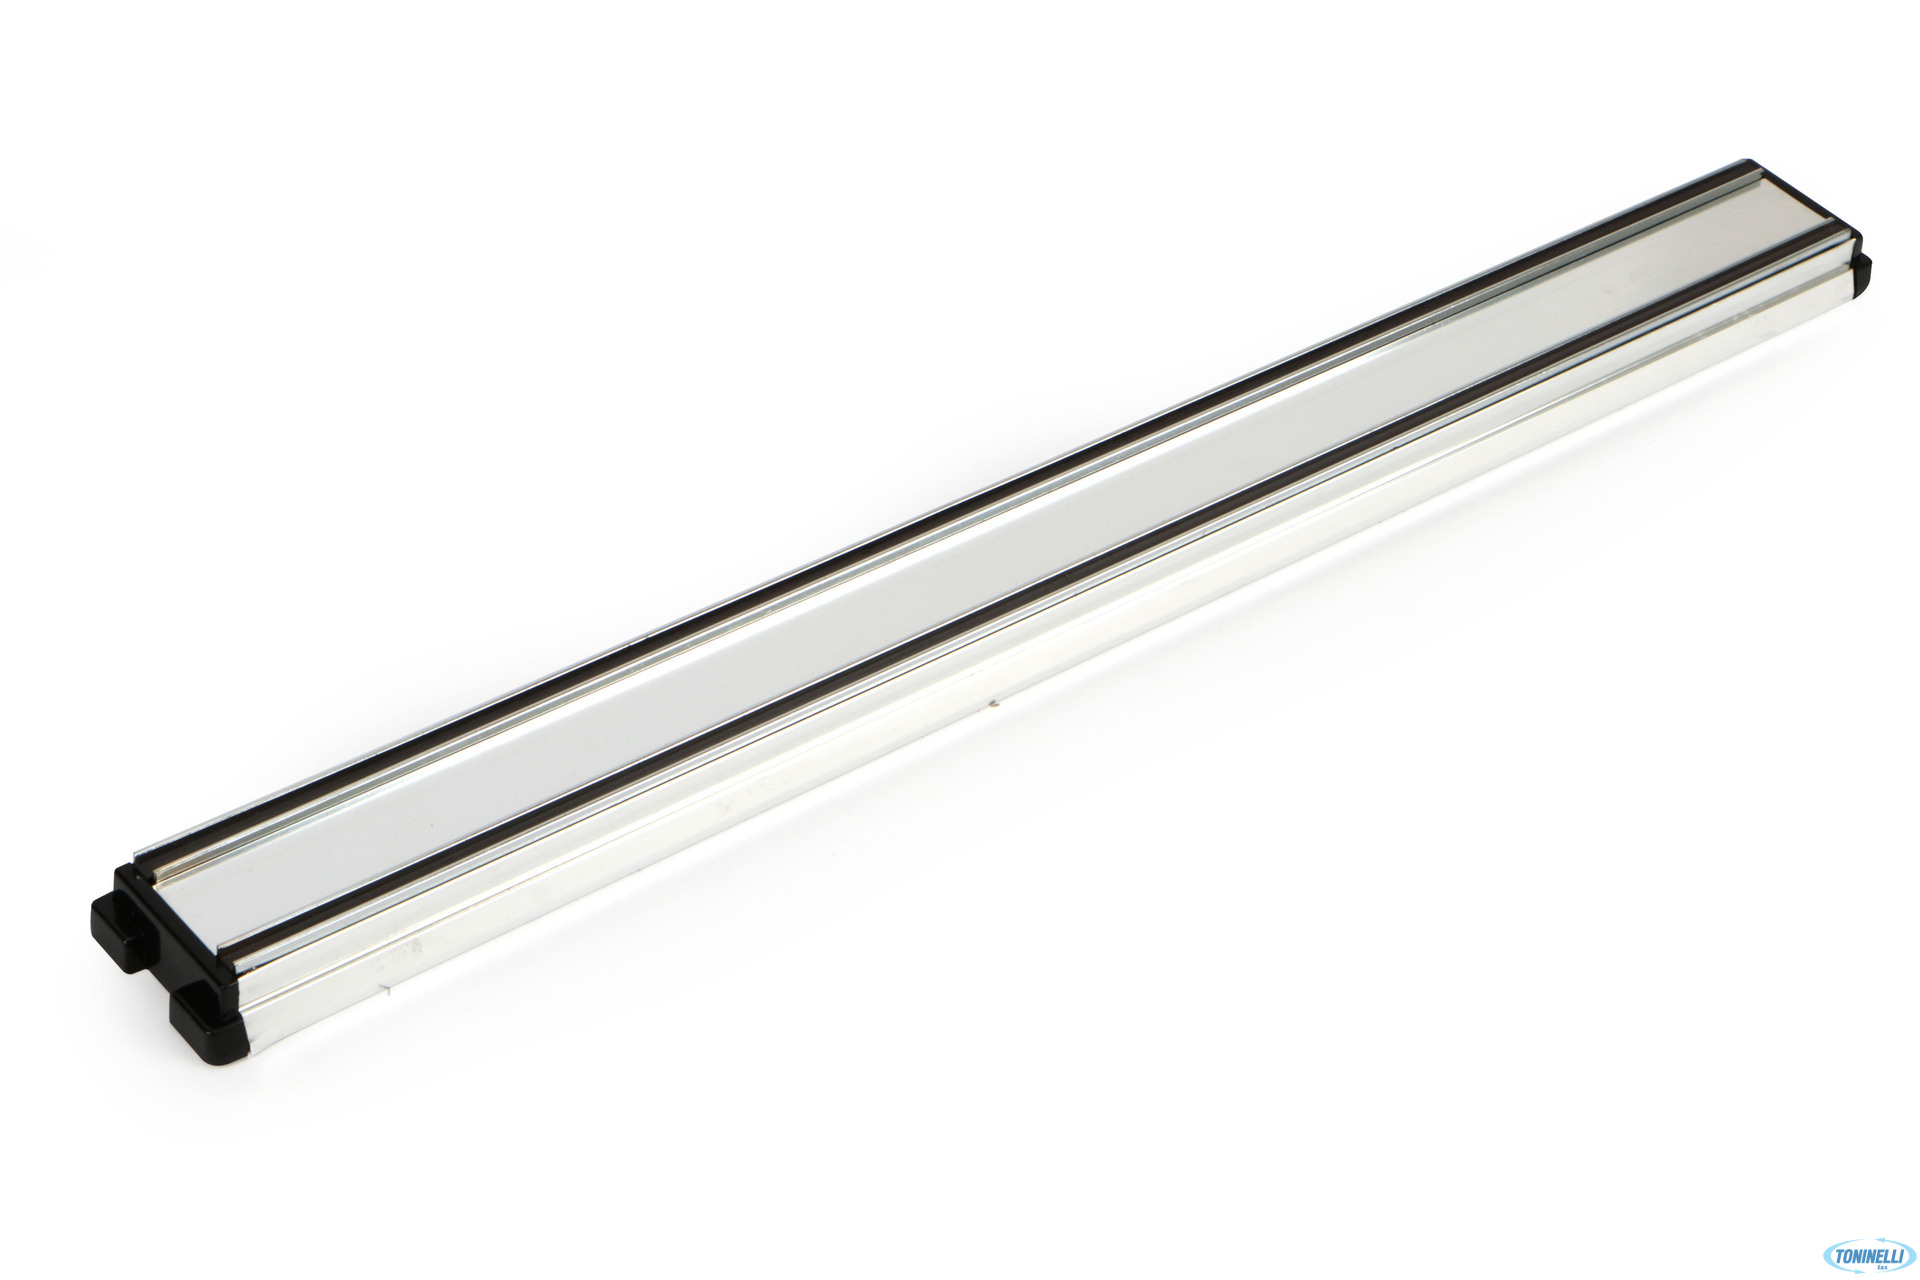 Barra magnetica magnetica barra magnetica per coltelli in legno 460 mm  nuovo : : Altro